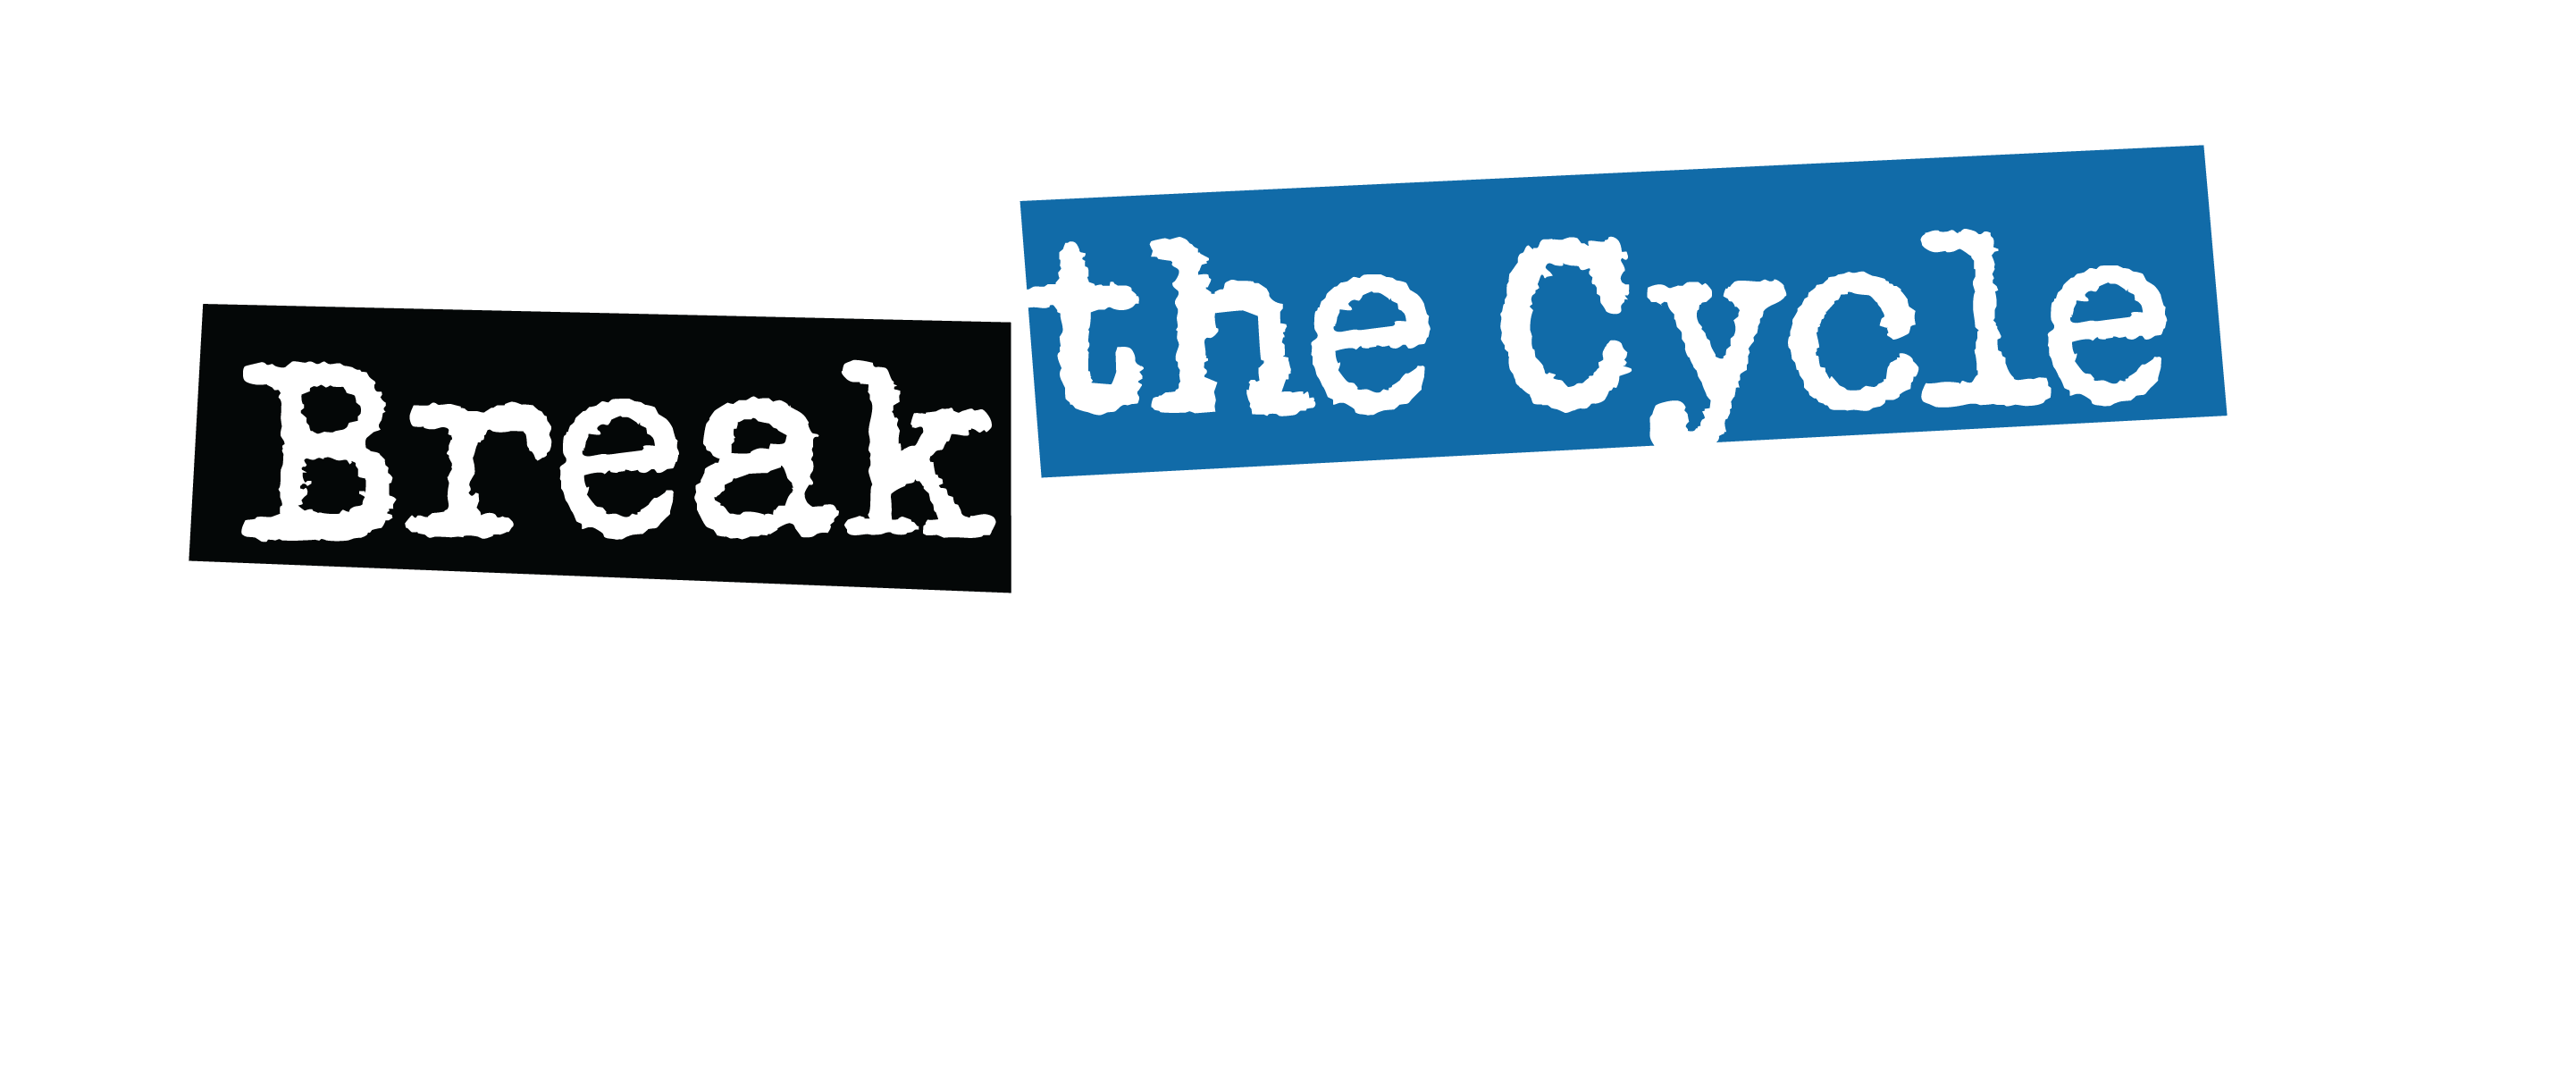 Break Logo - BREAK THE CYCLE LOGO | Loveisrespect.org